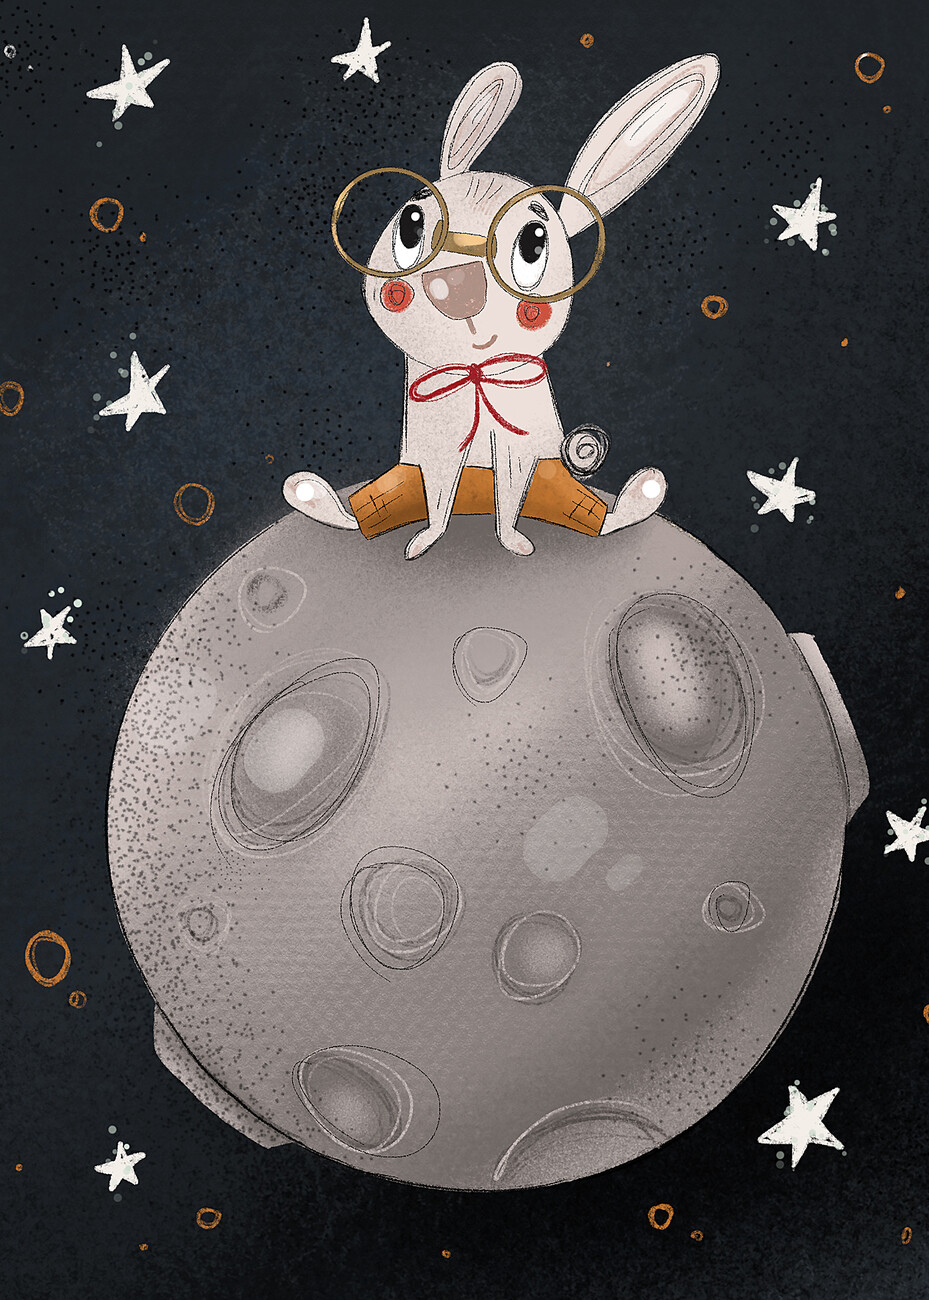 Kuva Rabbit on the moon